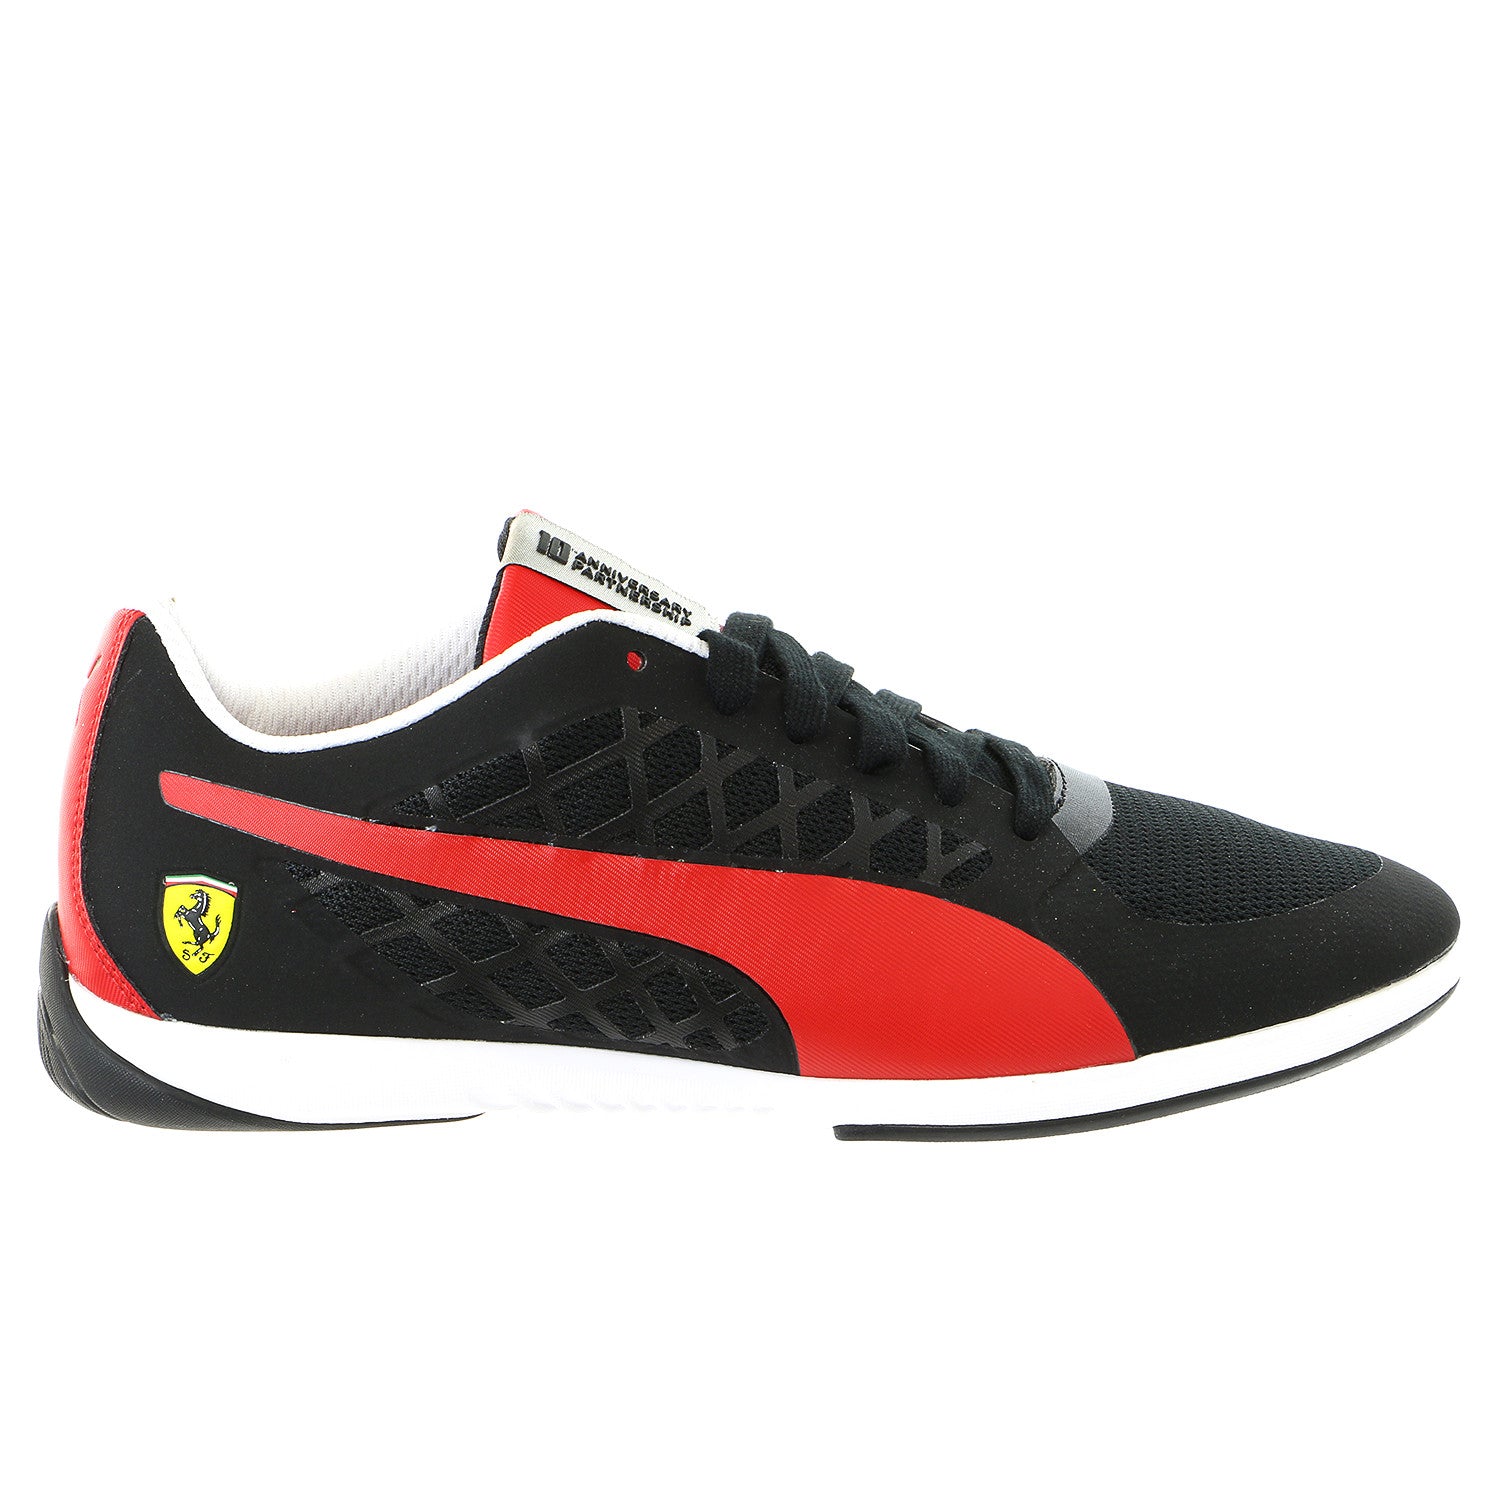 Puma Valorosso Scuderia Ferrari Sneaker Shoe - Black/Rosso C - Shoplifestyle